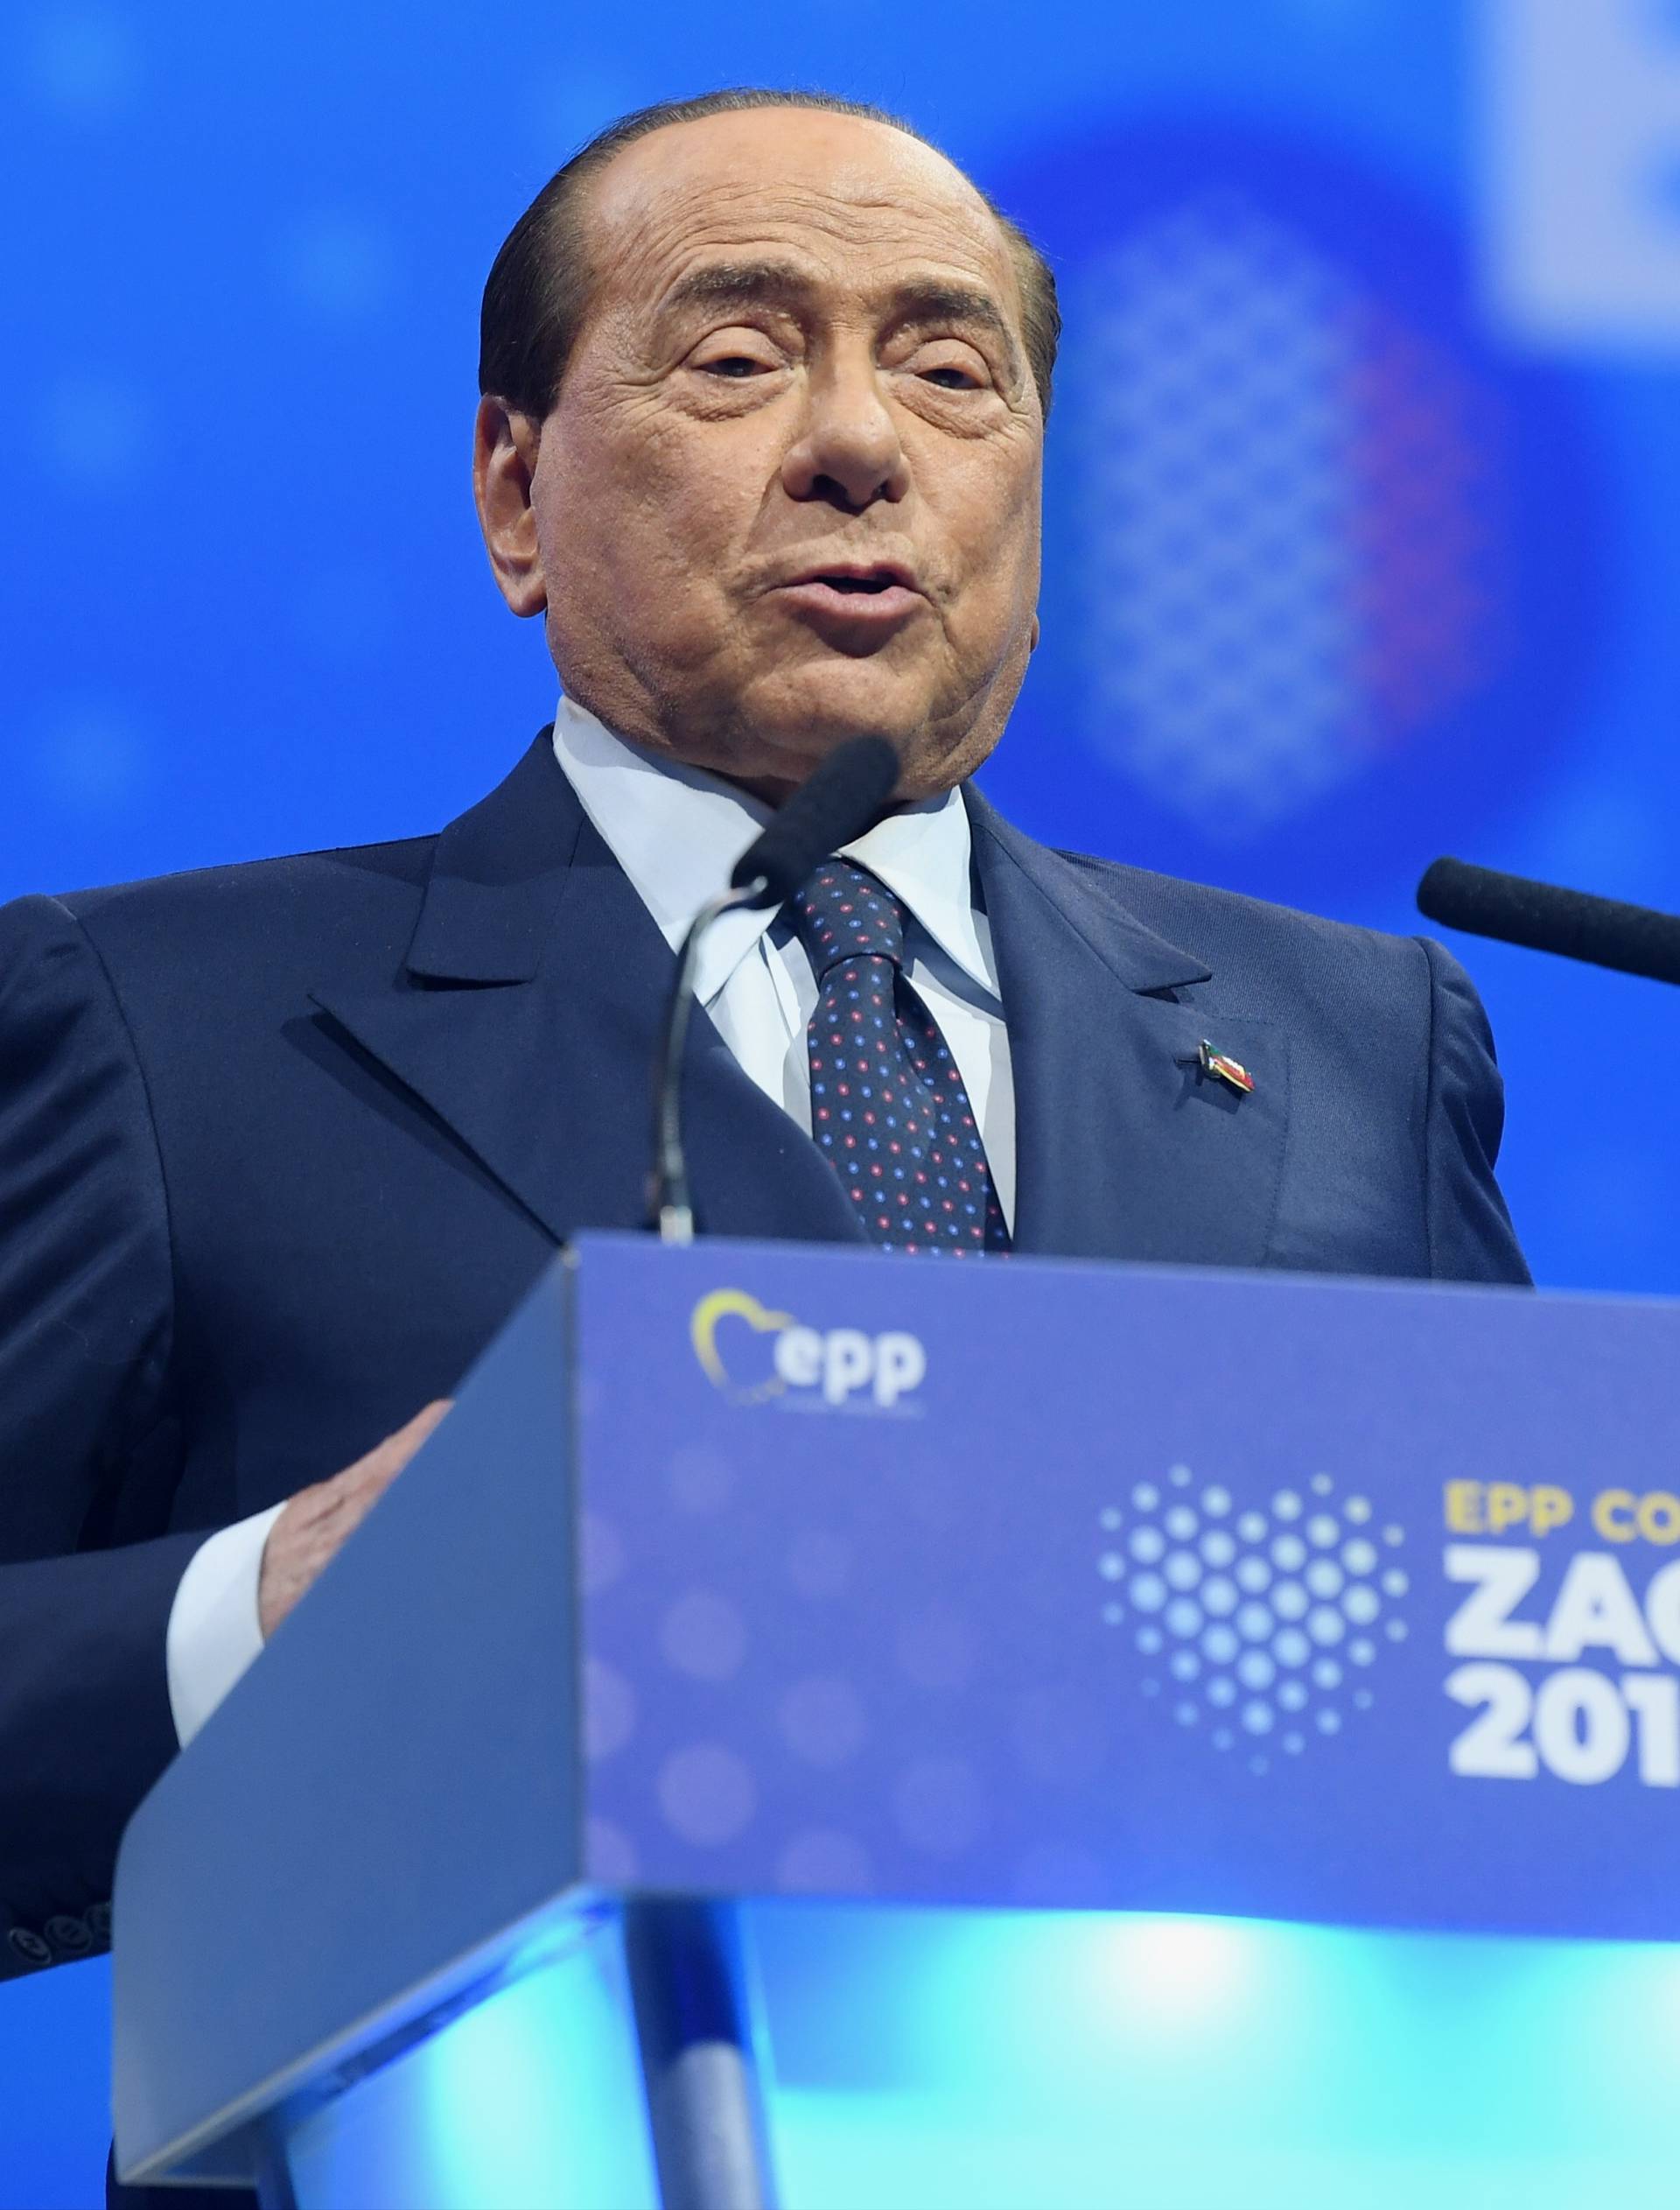 Zagreb: Govor Silvija Berlusconija na kongresu Europske pučke stranke